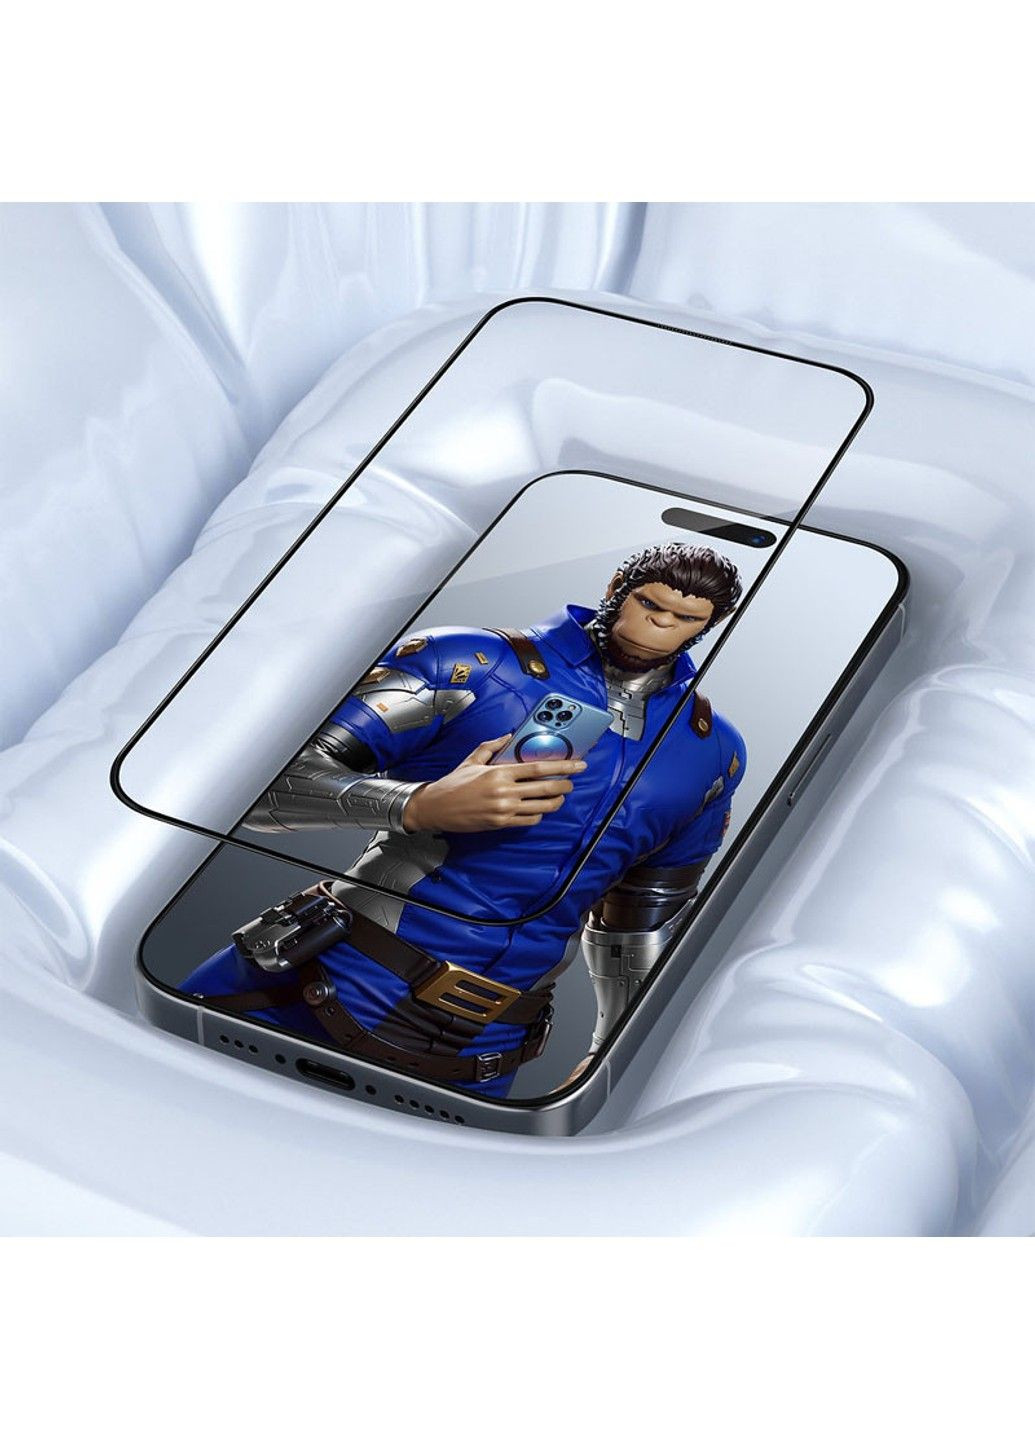 Защитное 3D стекло Invisible Airbag Anti-broken для Apple iPhone 14 Pro Max / 15 Plus (6.7") Blueo (293511485)